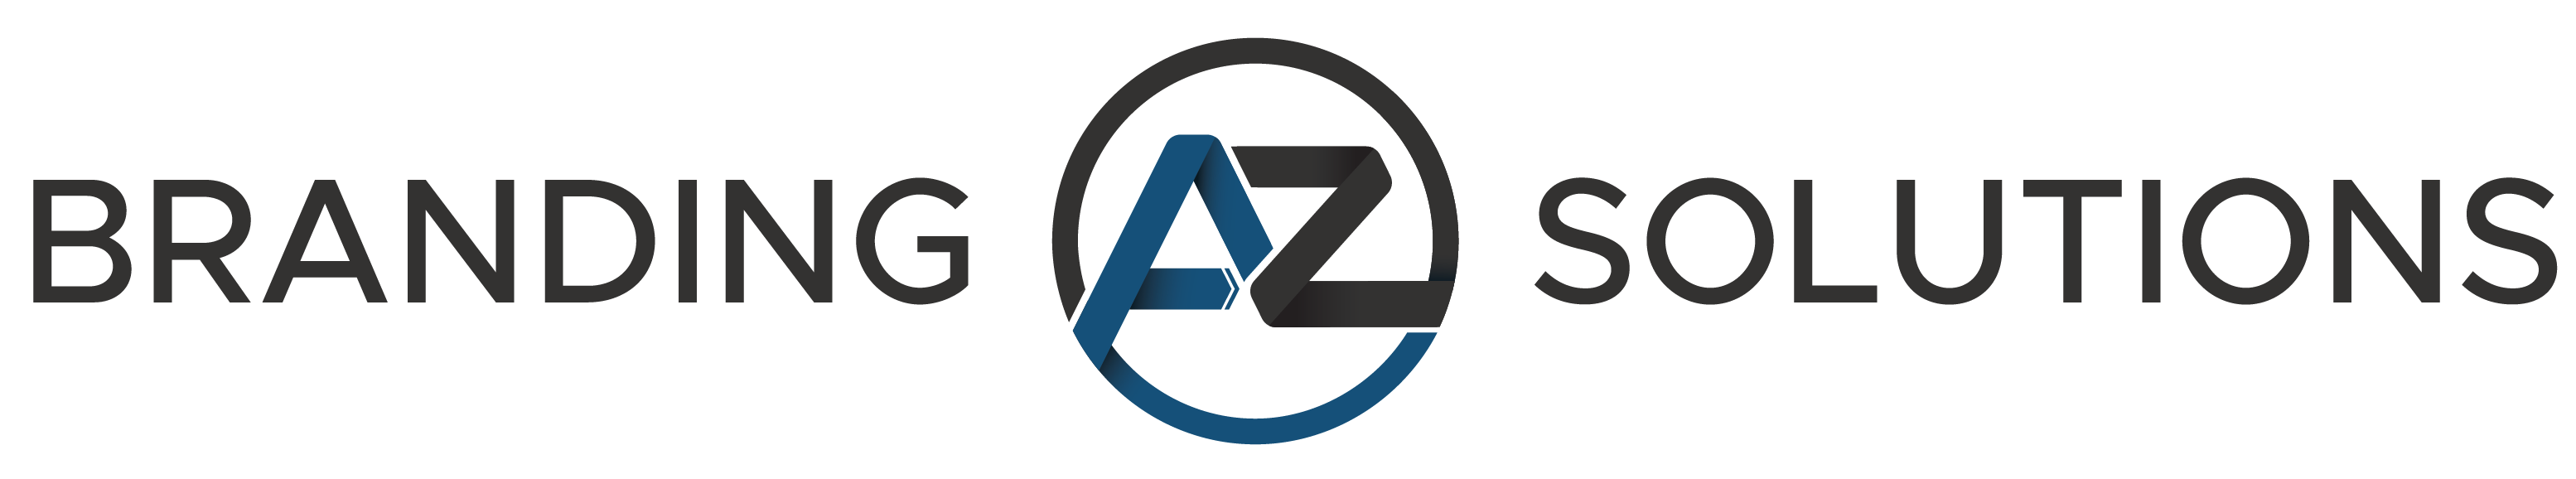 AZee Branding Solutions